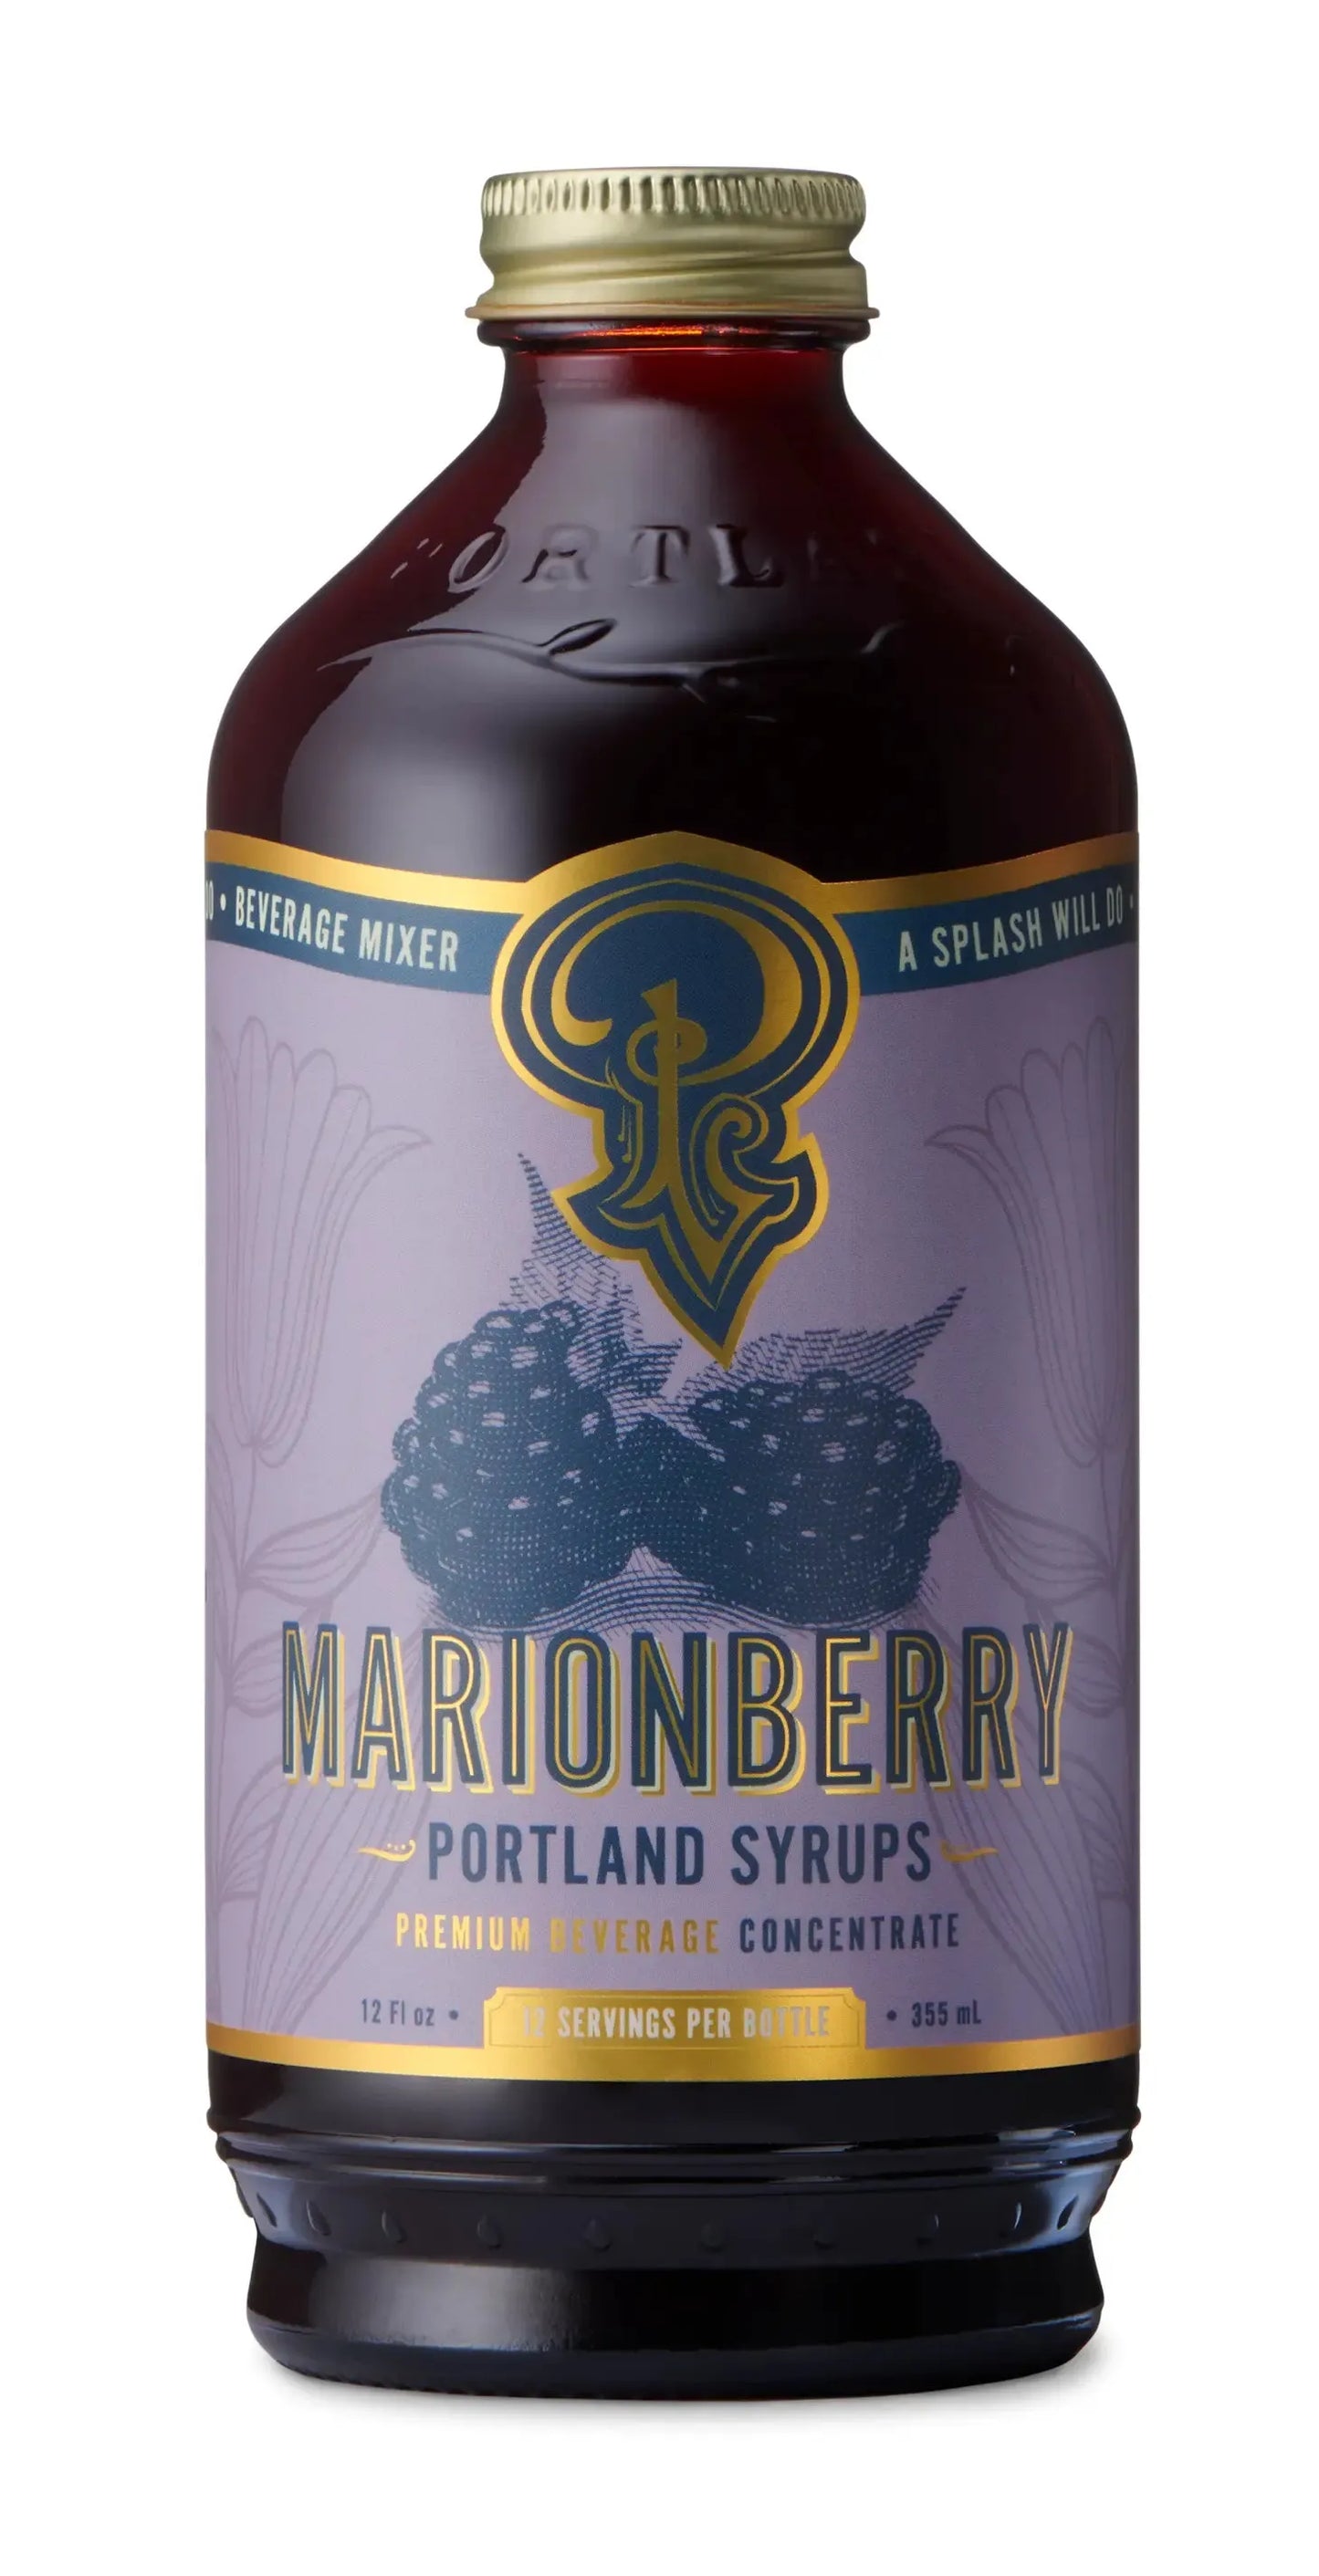 Marionberry Syrup 12oz - cocktail / mocktail beverage mixer, Portland Syrups